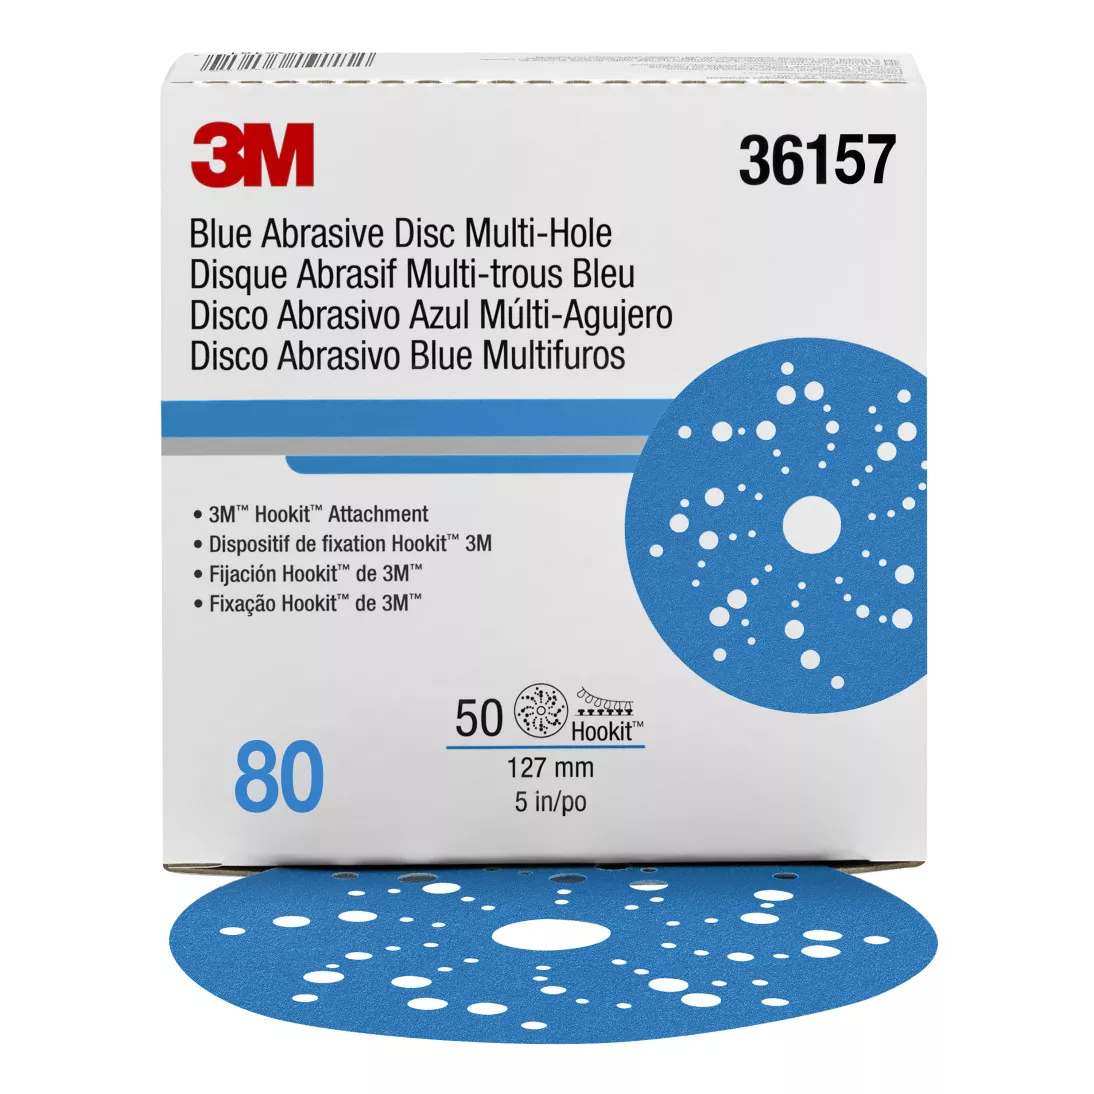 3M™ Hookit™ Blue Abrasive Disc 321U Multi-hole, 36157, 5 in, 80, 50
discs per carton, 4 cartons per case